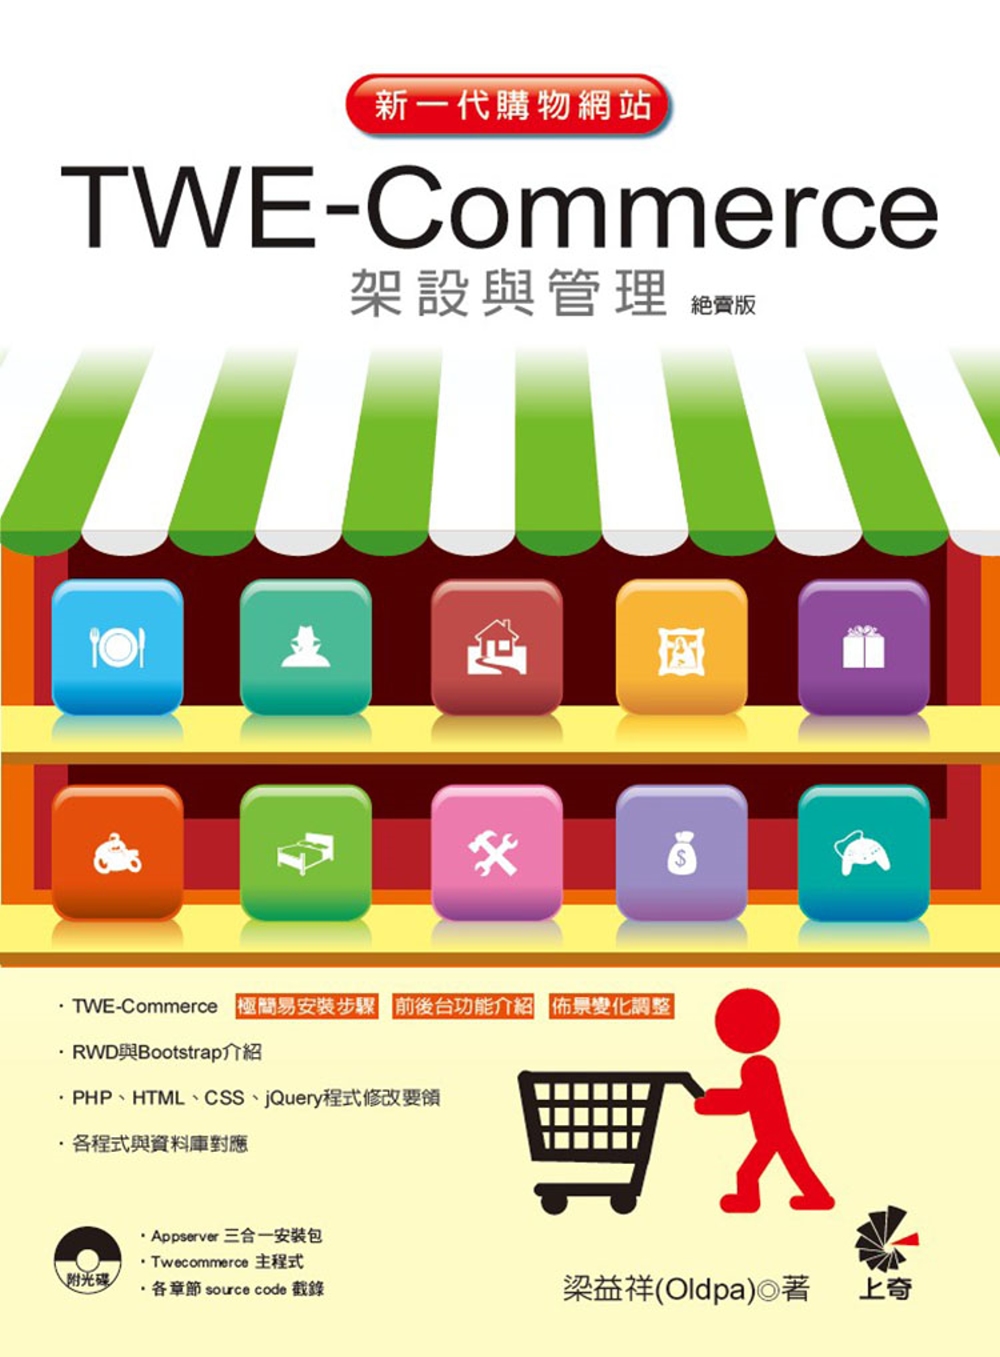 新一代購物網站TWE Commerce架設與管理（絕賣版）